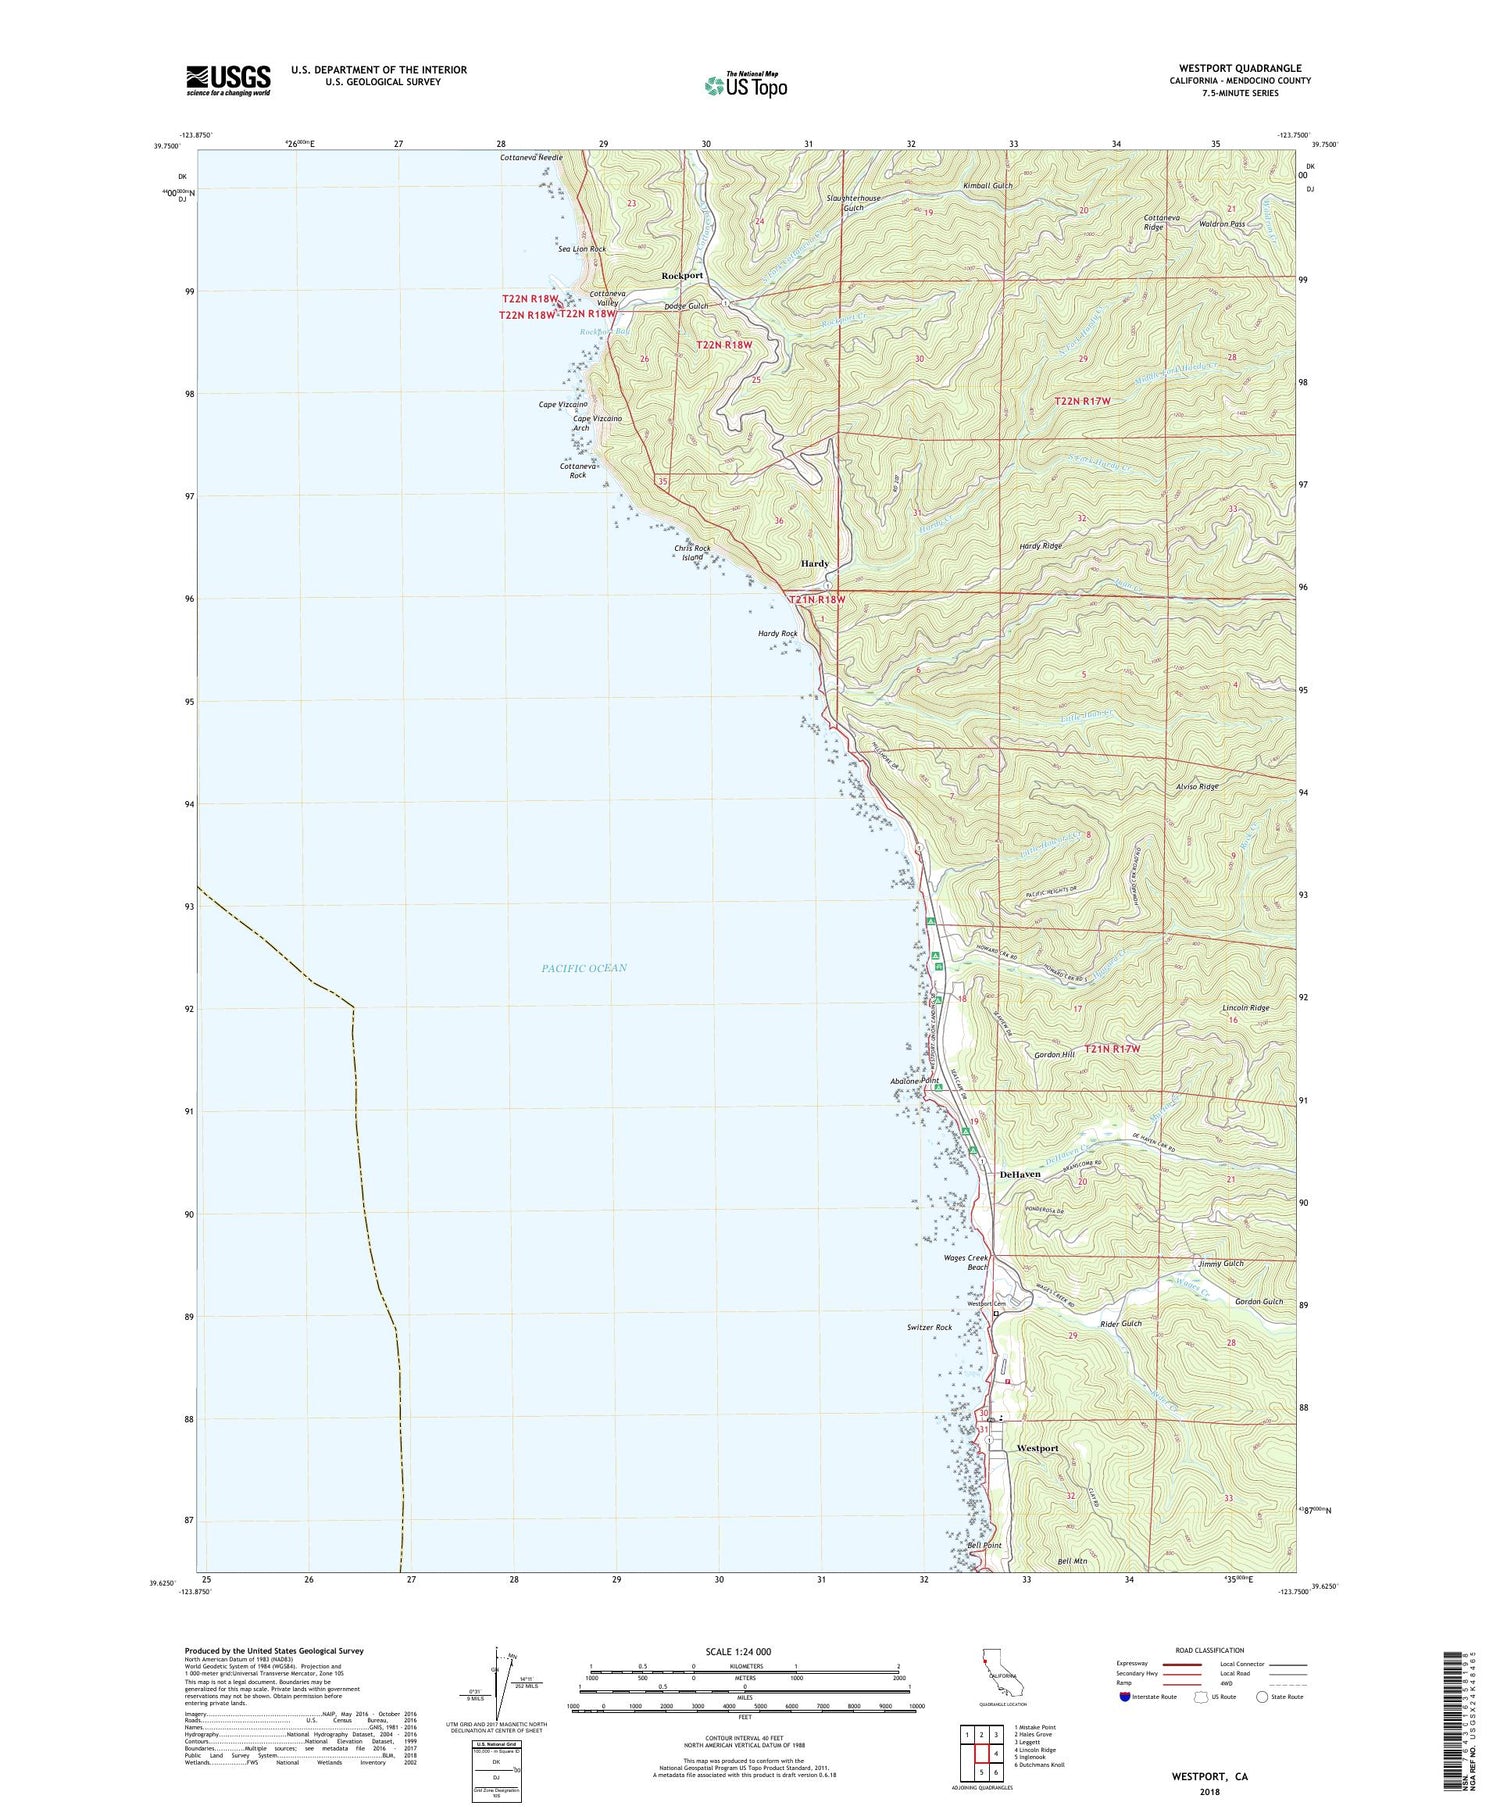 Westport California US Topo Map Image